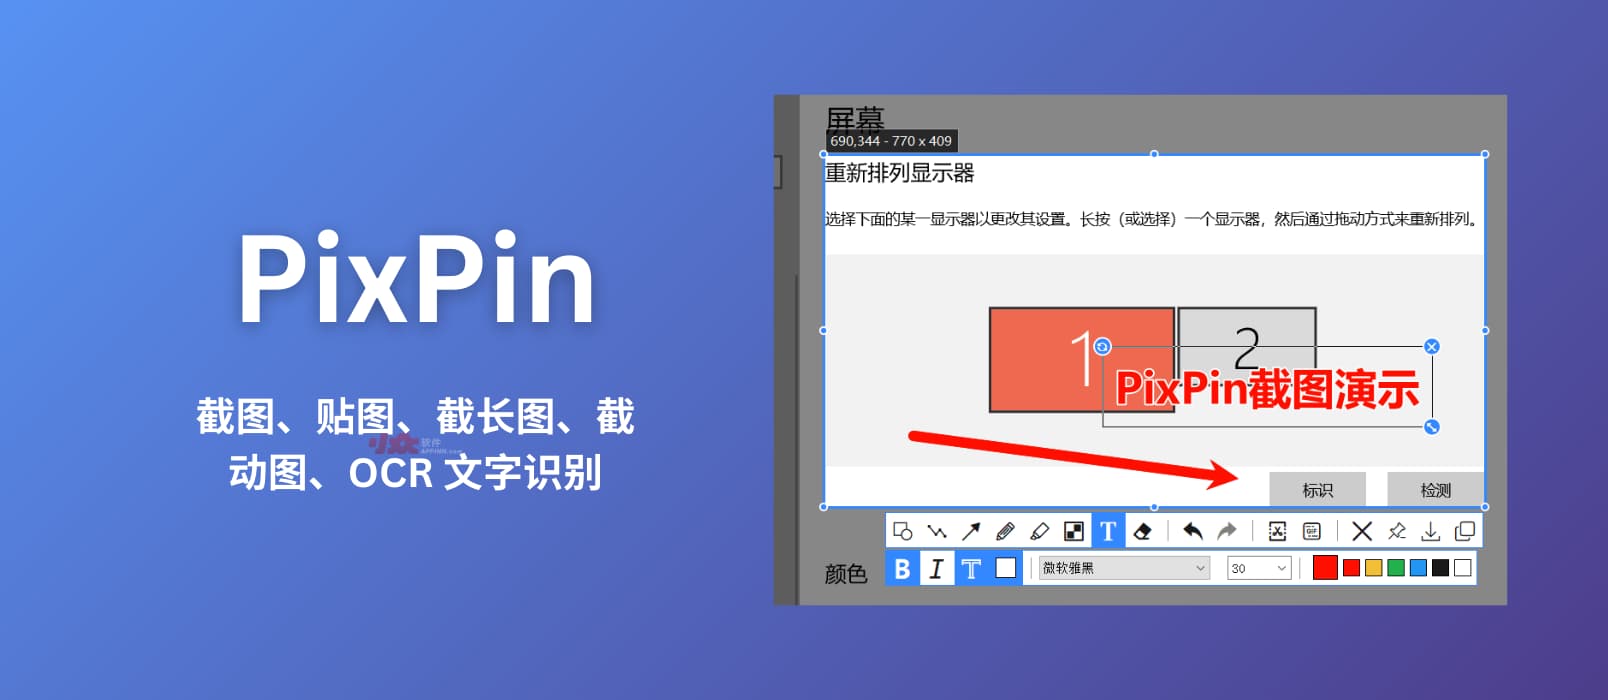 PixPin  新截图工具：贴图、截长图、截动图、OCR 文字识别[Windows]  小众软件